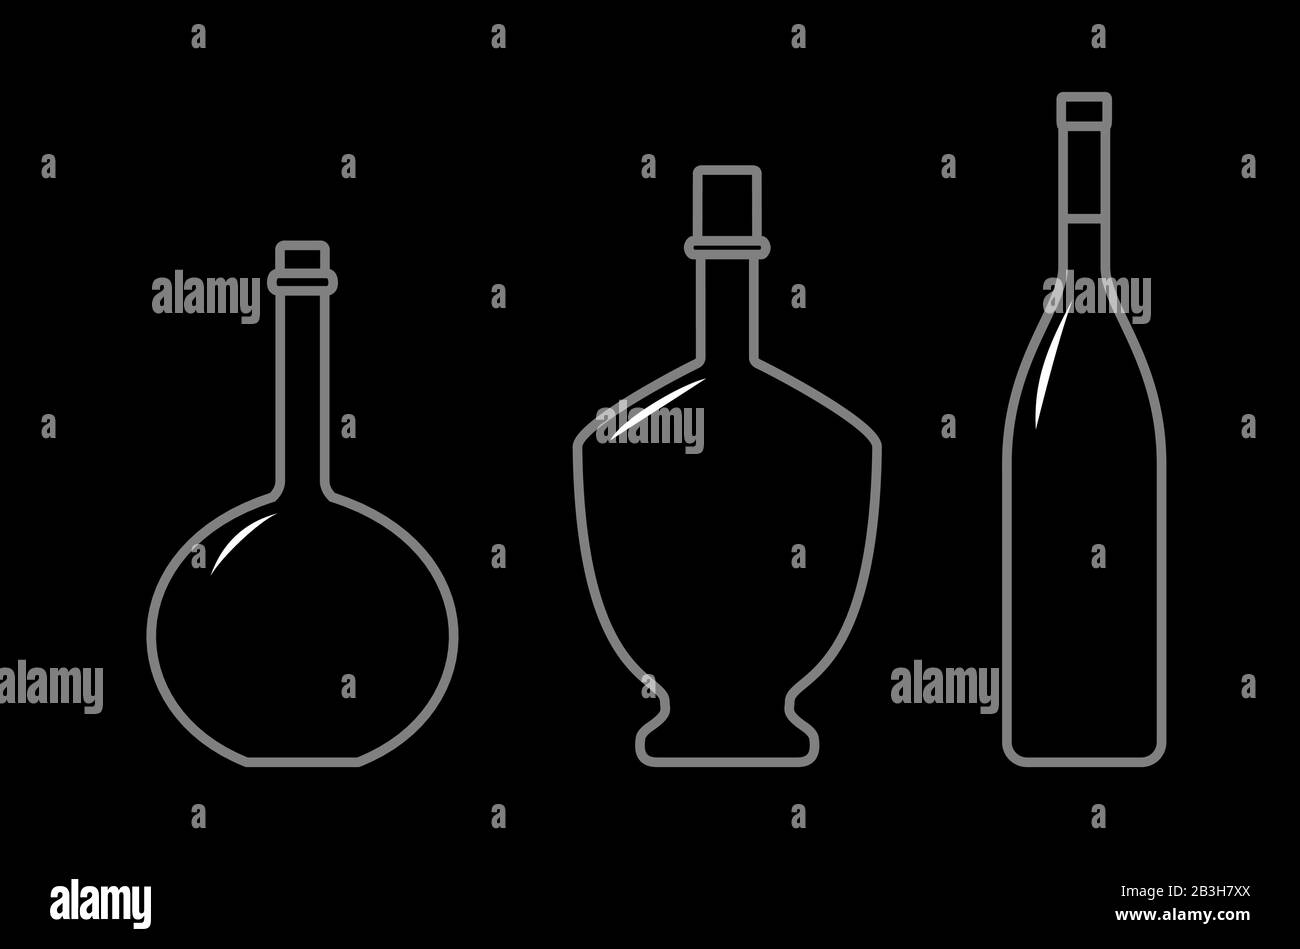 Set Di Bottiglie Di Diverse Forme Con Collo Stretto. Bottiglie In Vetro Per Bevande Varie; Liquidi Diversi. Immagine Vettoriale Su Sfondo Nero. Illustrazione Vettoriale